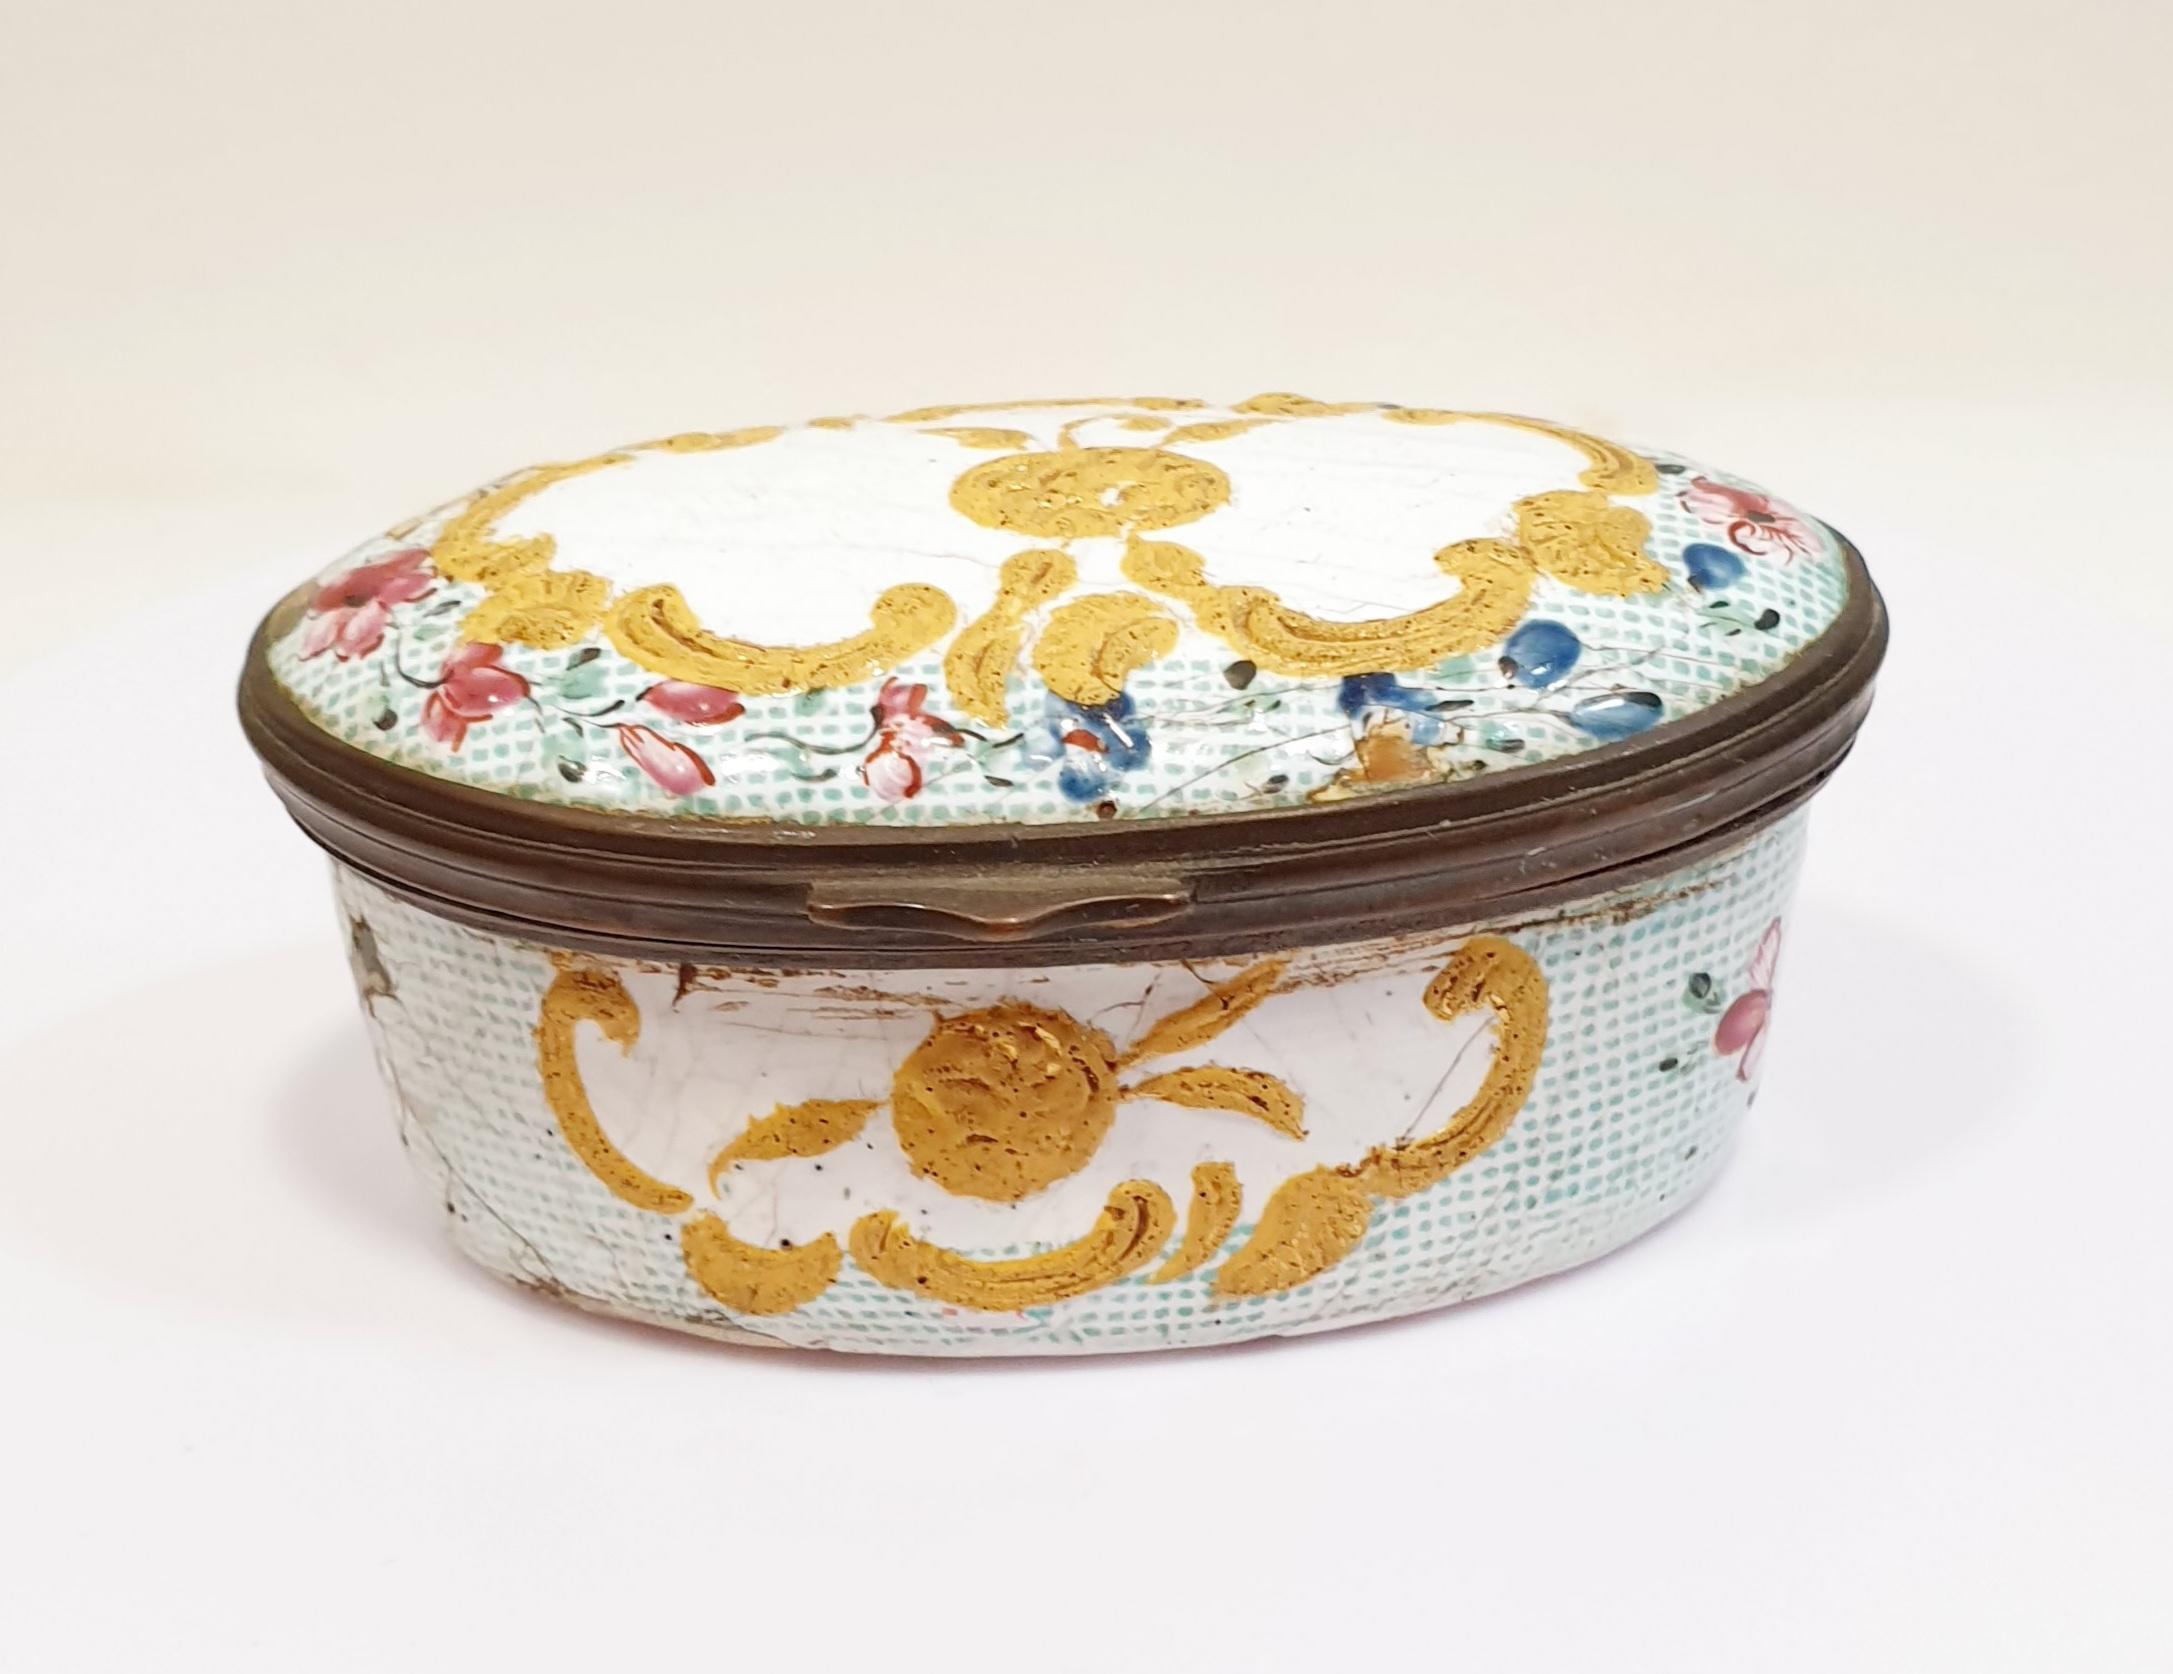 Antique boîte en porcelaine peinte à la main du 19ème siècle avec des fleurs
aprox 1880 peint à la main en porcelaine jaune
Un cadeau parfait pour la décoration ou la conservation d'objets personnels et de valeur
Fait partie d'une collection